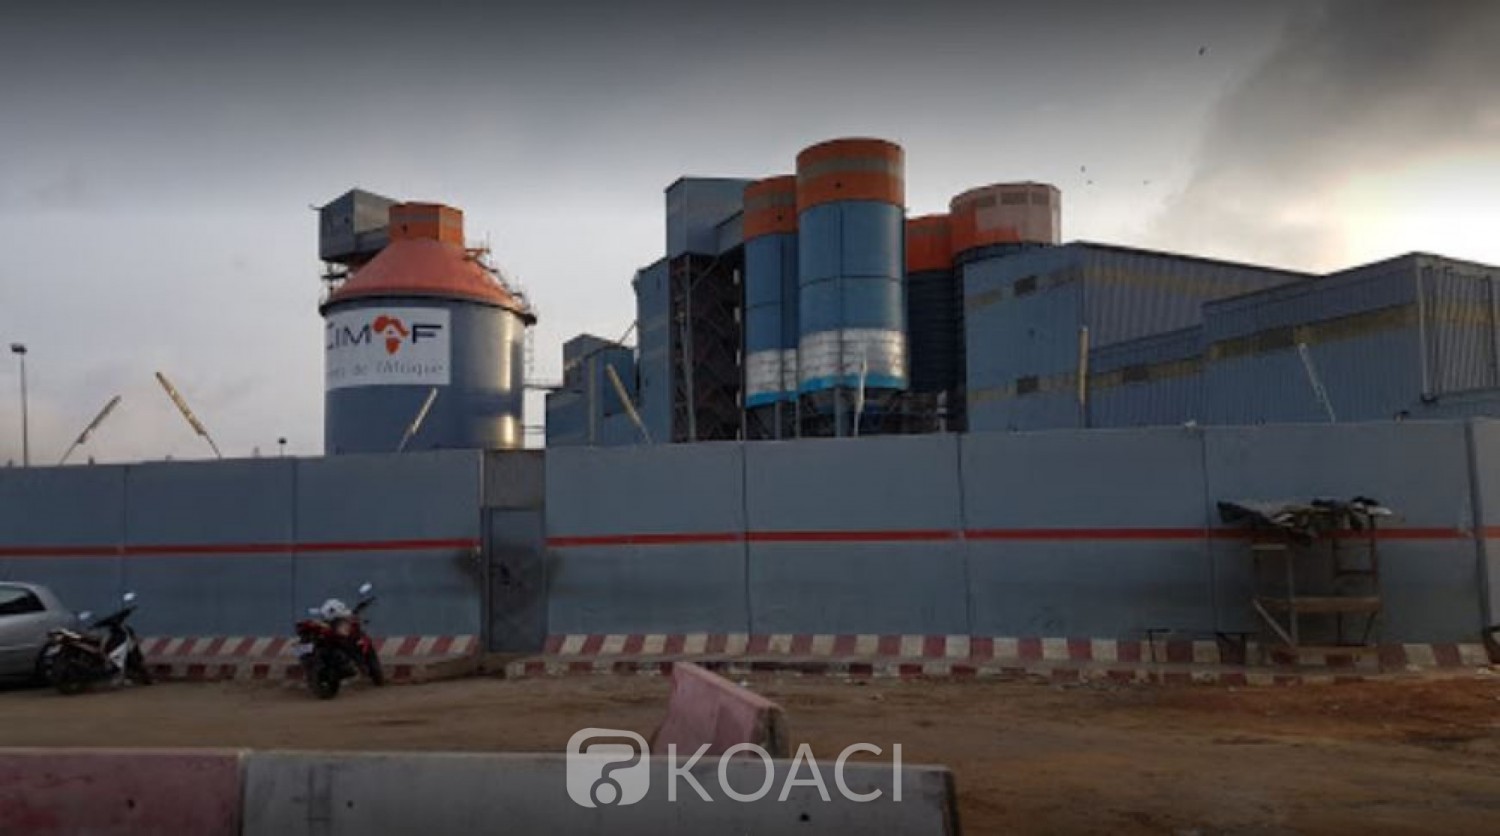 Côte d'Ivoire : Encombrement provoquant un embouteillage sur la voie de la Zone Industrielle, l'observatoire interpelle les responsables d'une usine